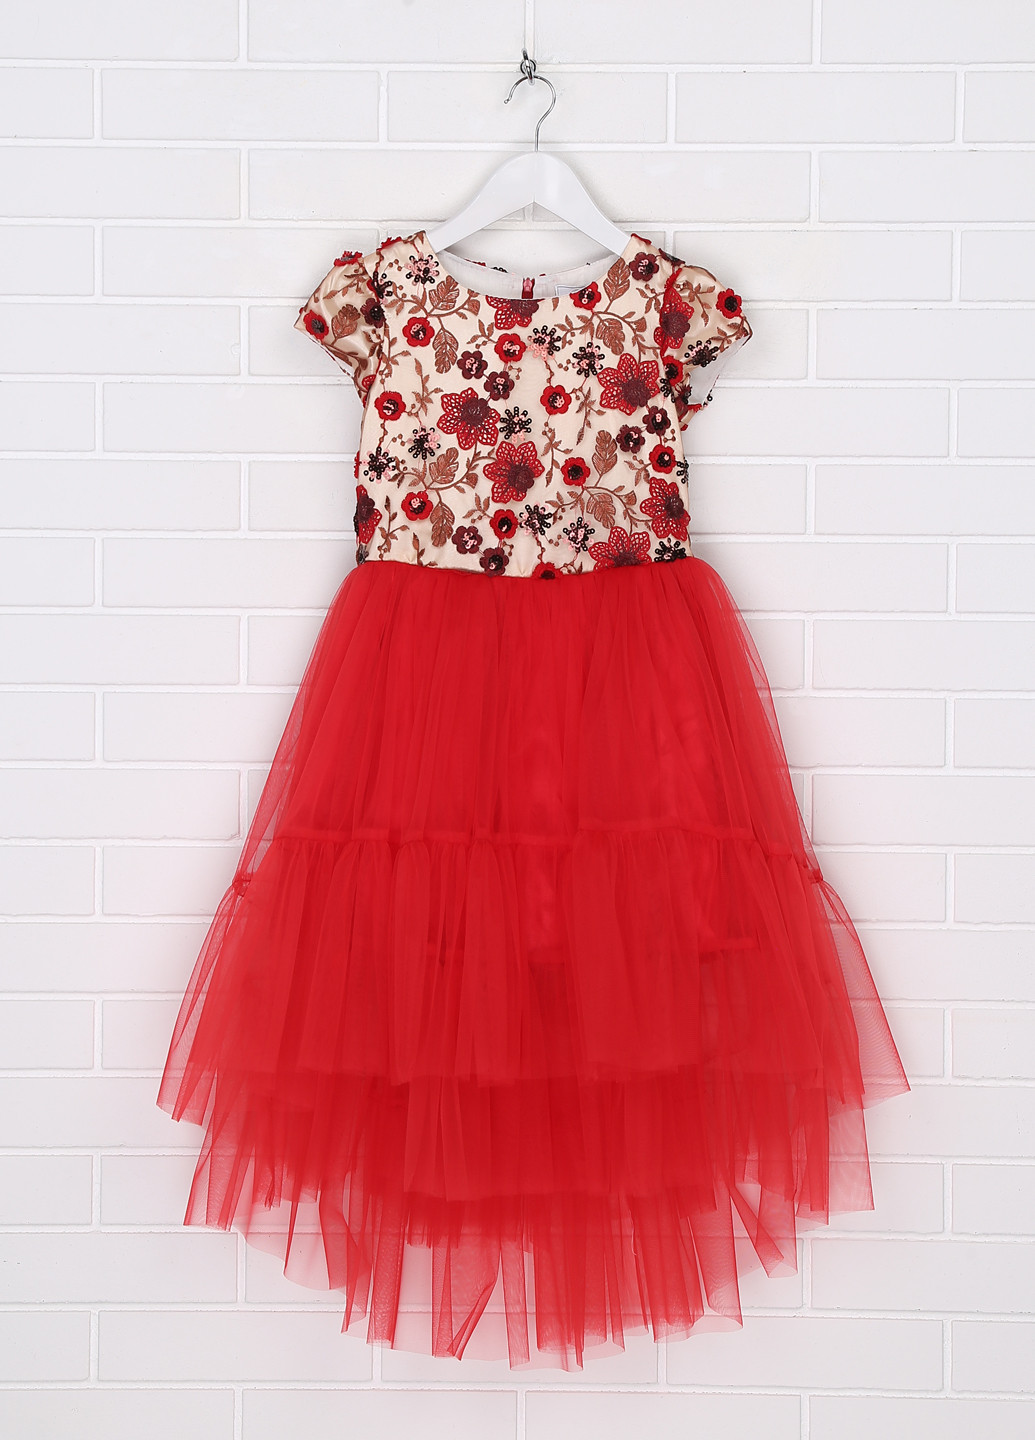 Червона святковий сукня Sasha з квітковим принтом